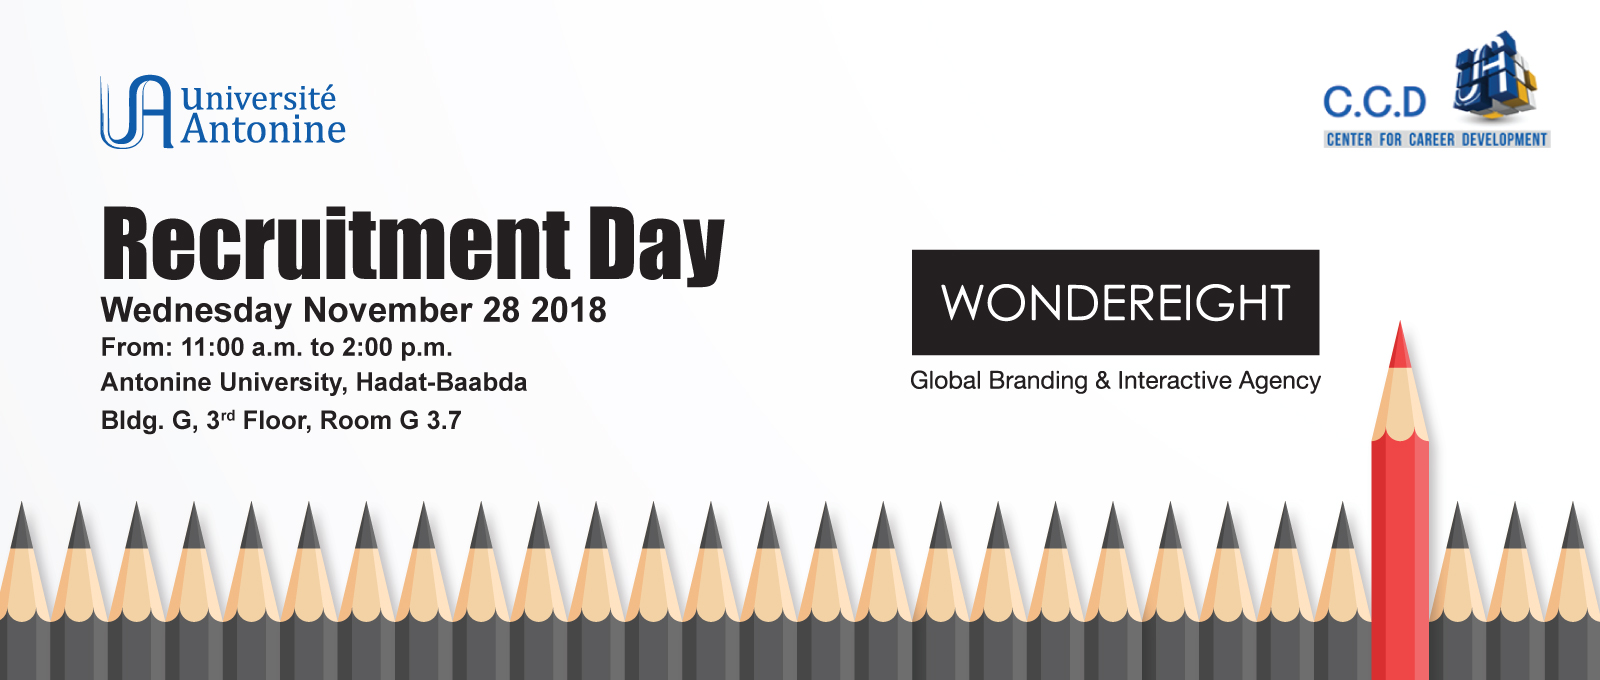 WonderEight Recruitment Day